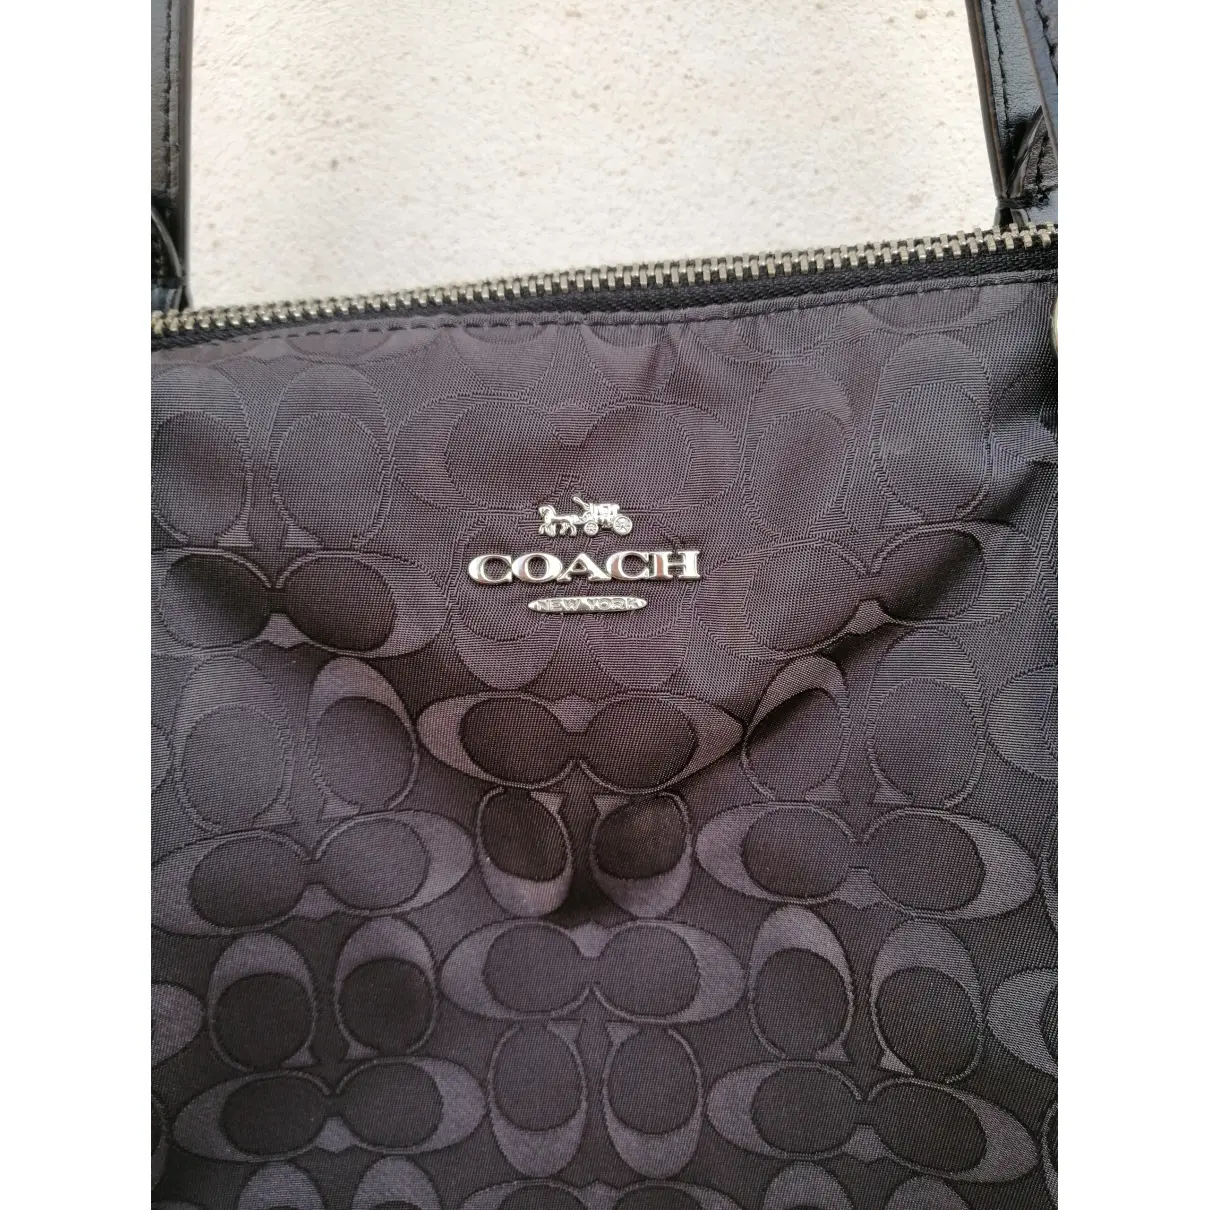 Buy Coach CITY ZIP TOTE linen handbag online